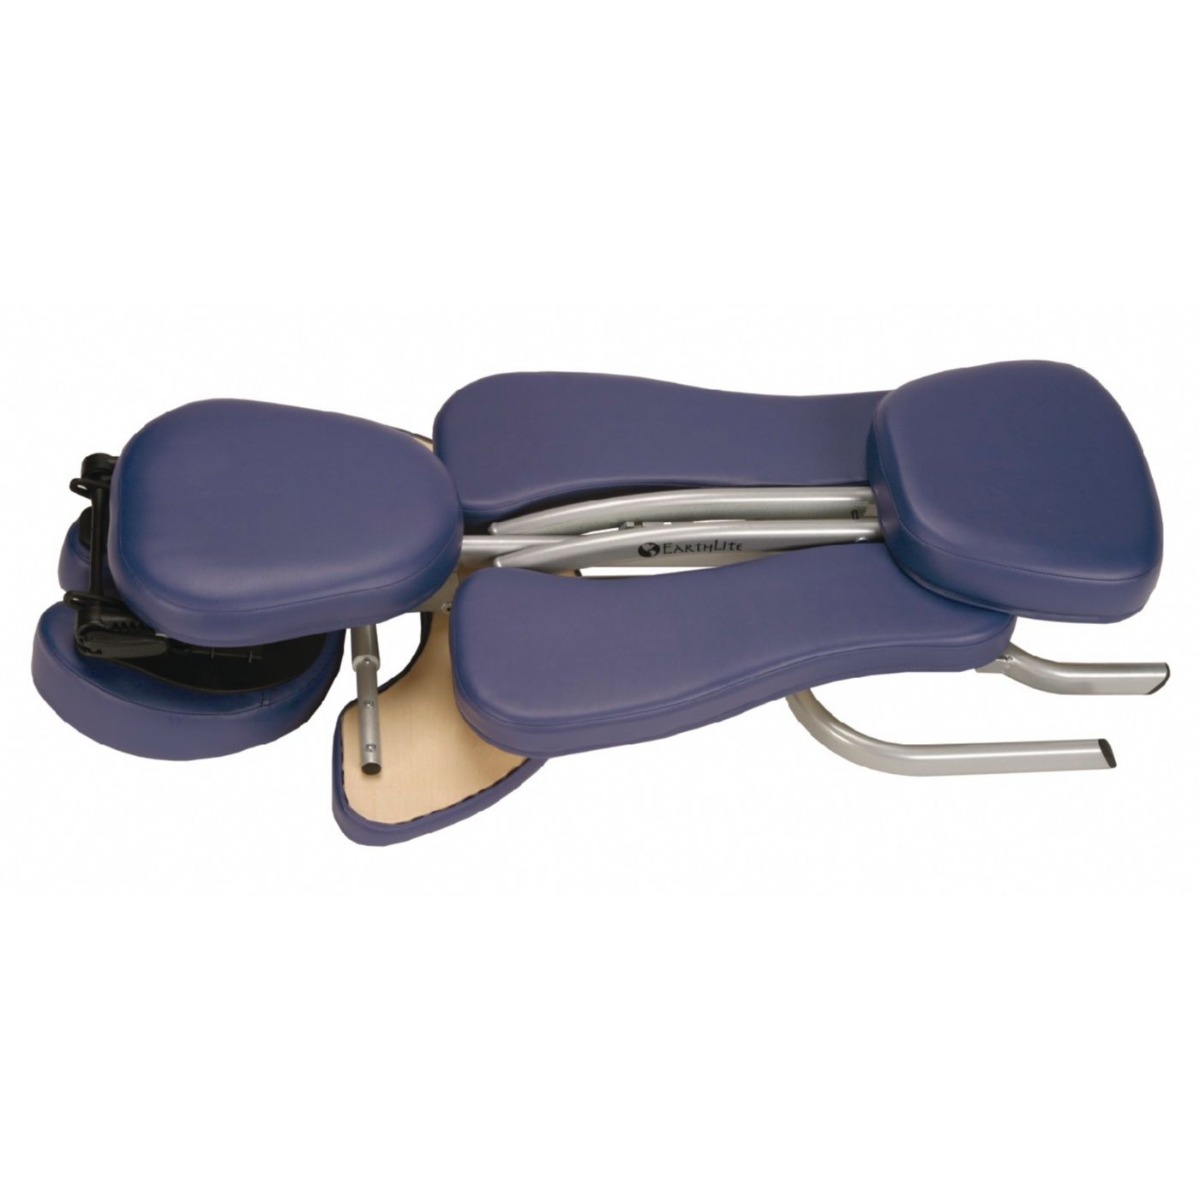 EarthLite Vortex Portable Massage Chair